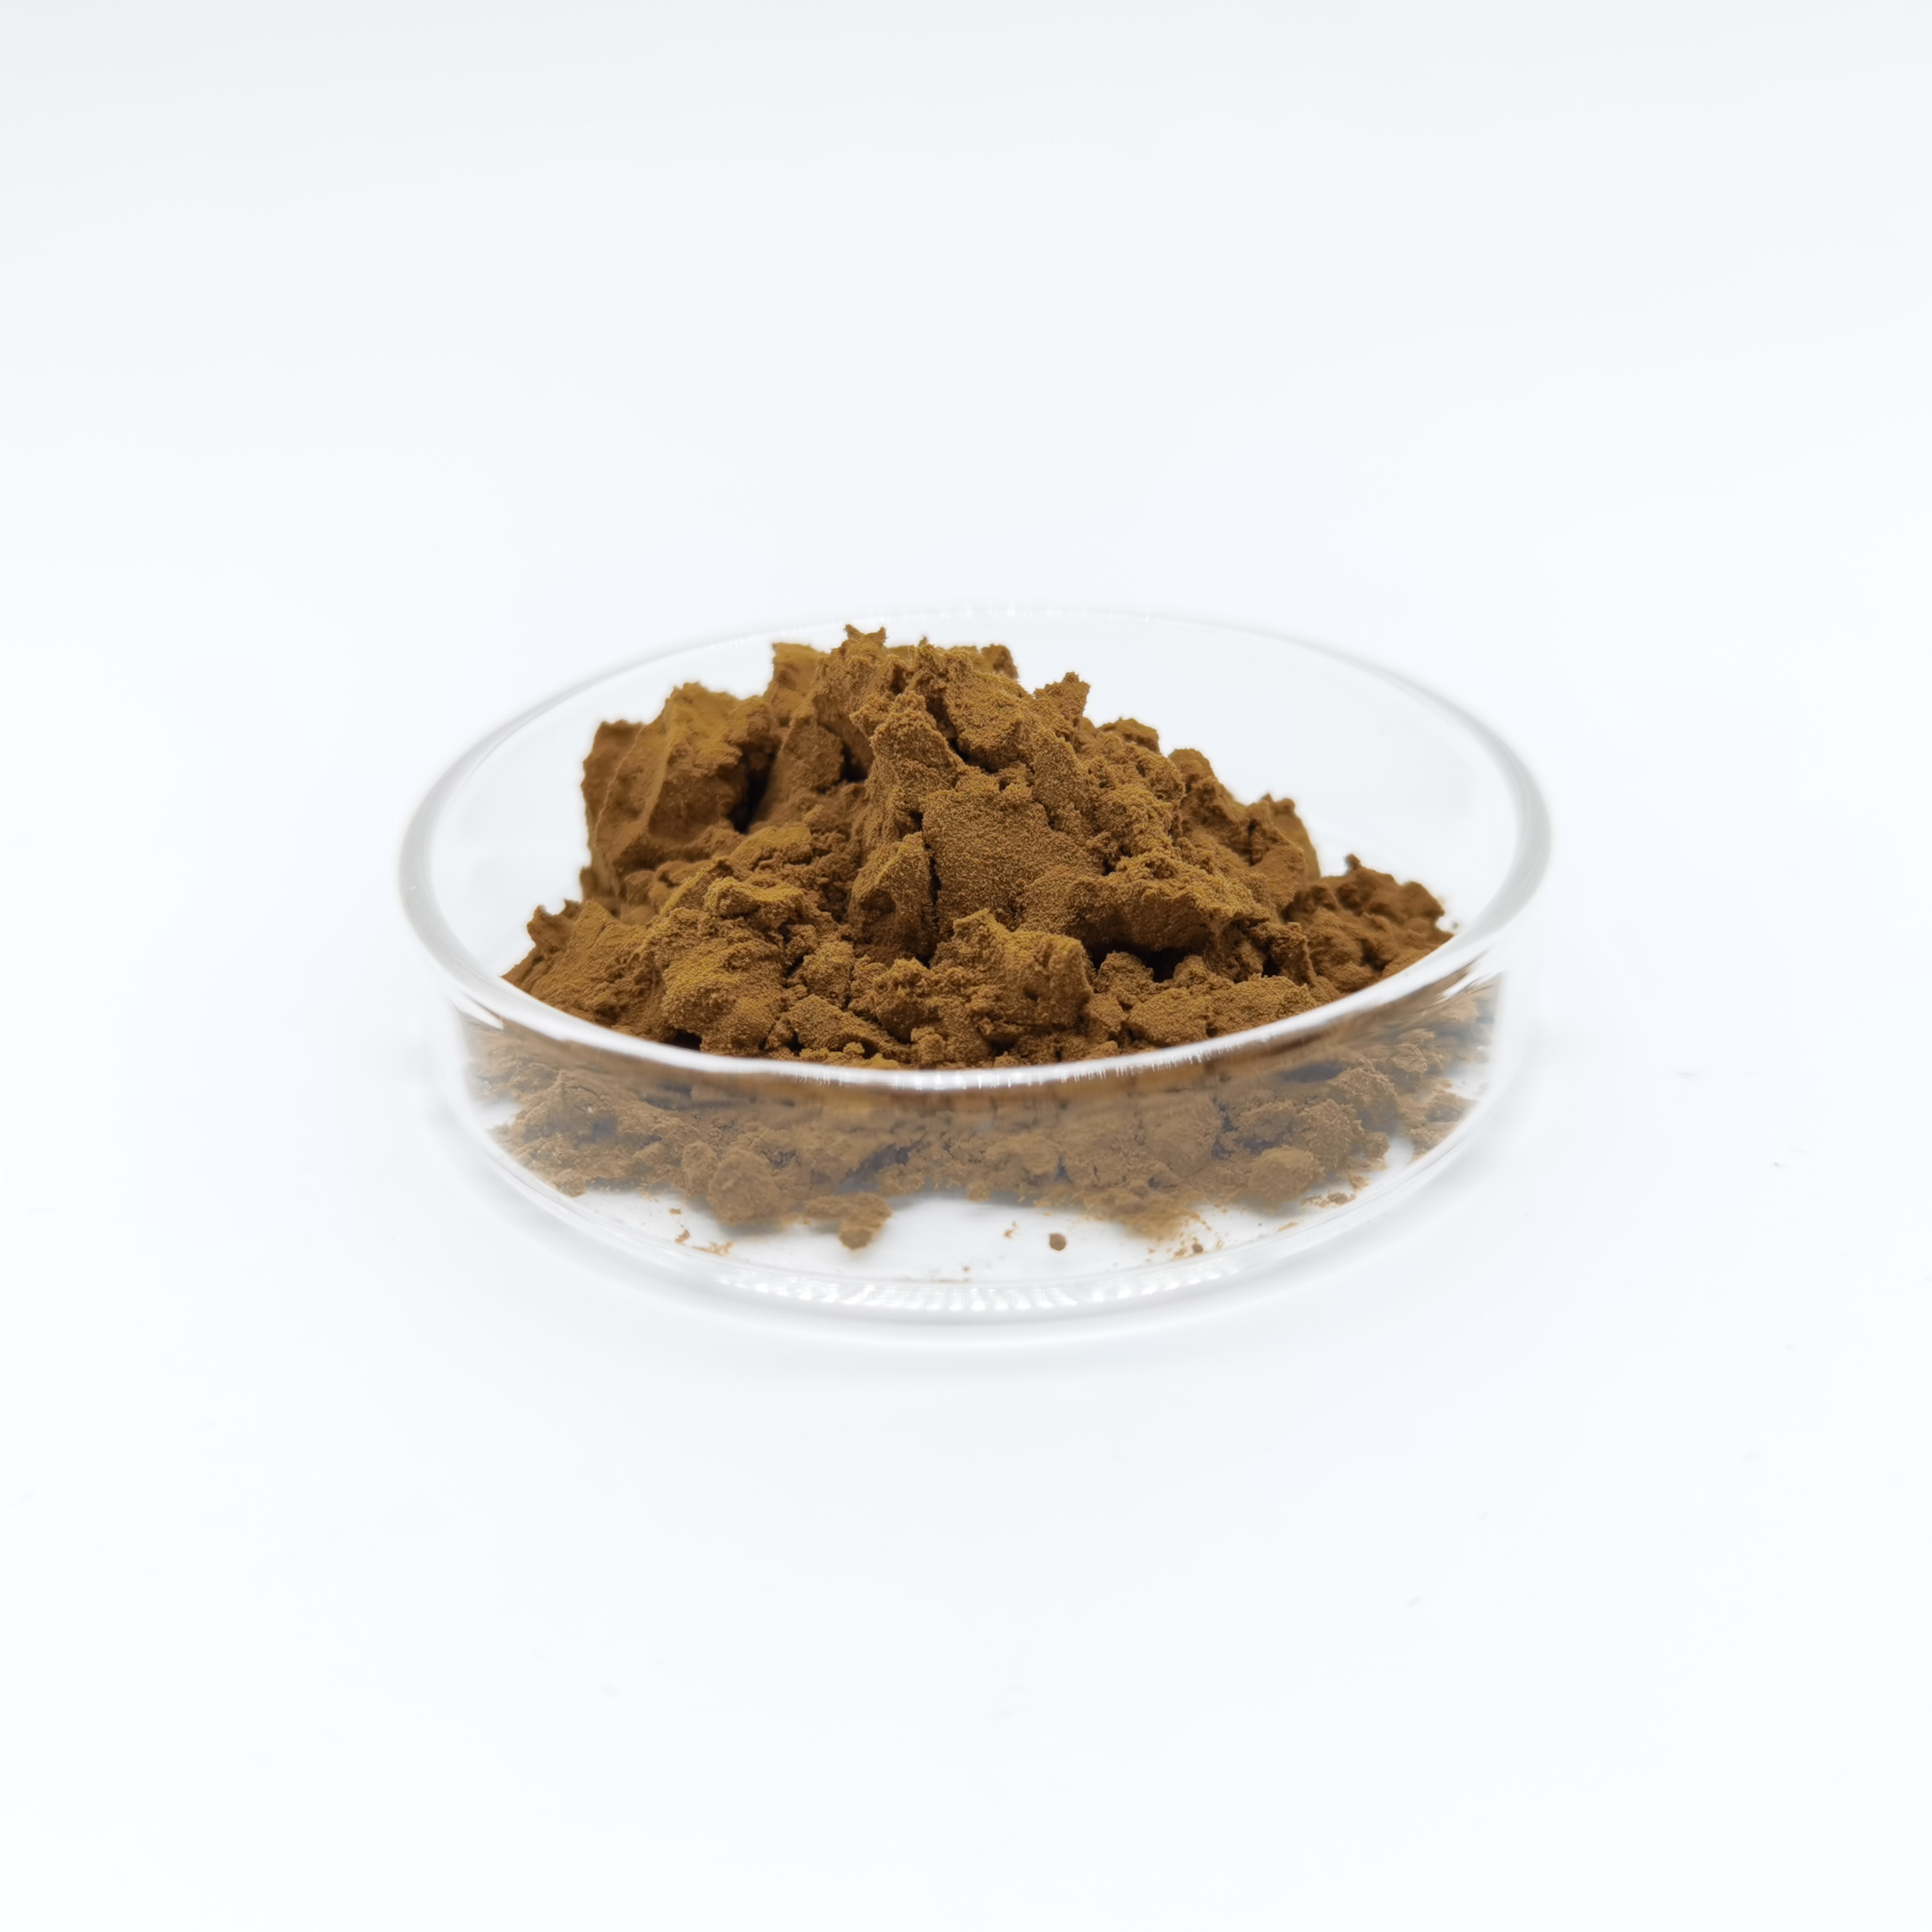 Supply Health Supplement Muira Puama Bark Extract muira Puama powder 